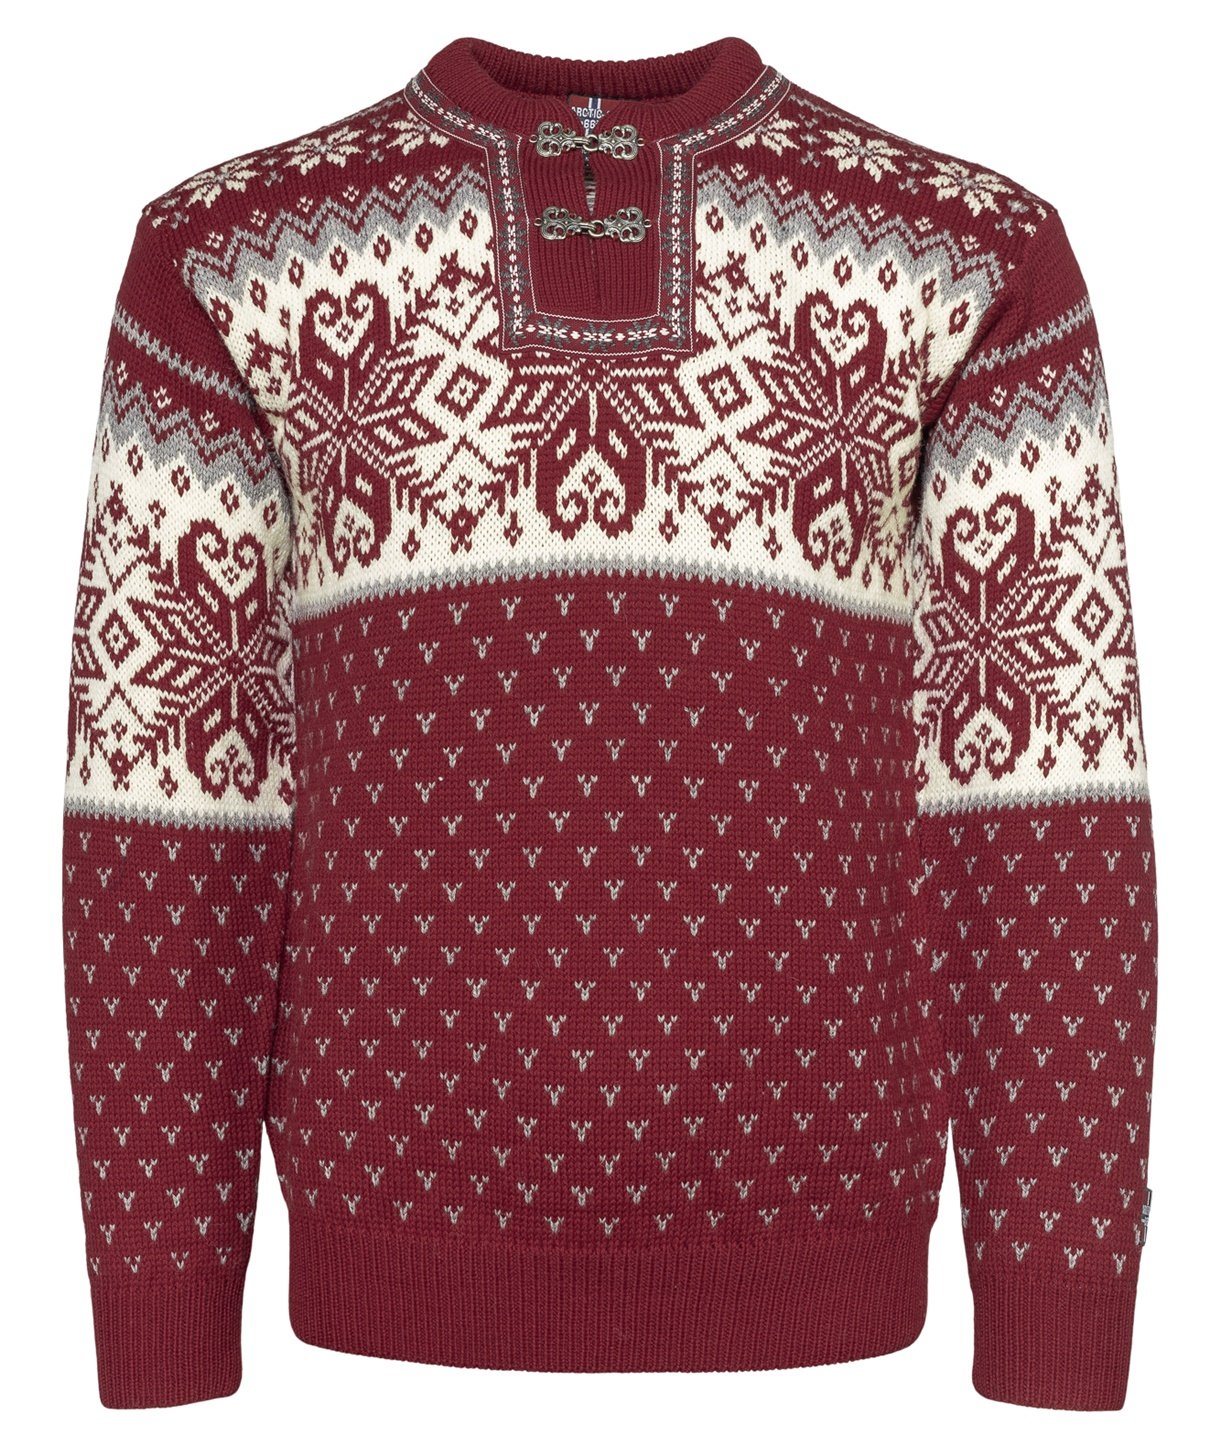 Spar kr. 500,- på denne flotte Sweater i 100% kamgarnuld, med ægte tinhægter.